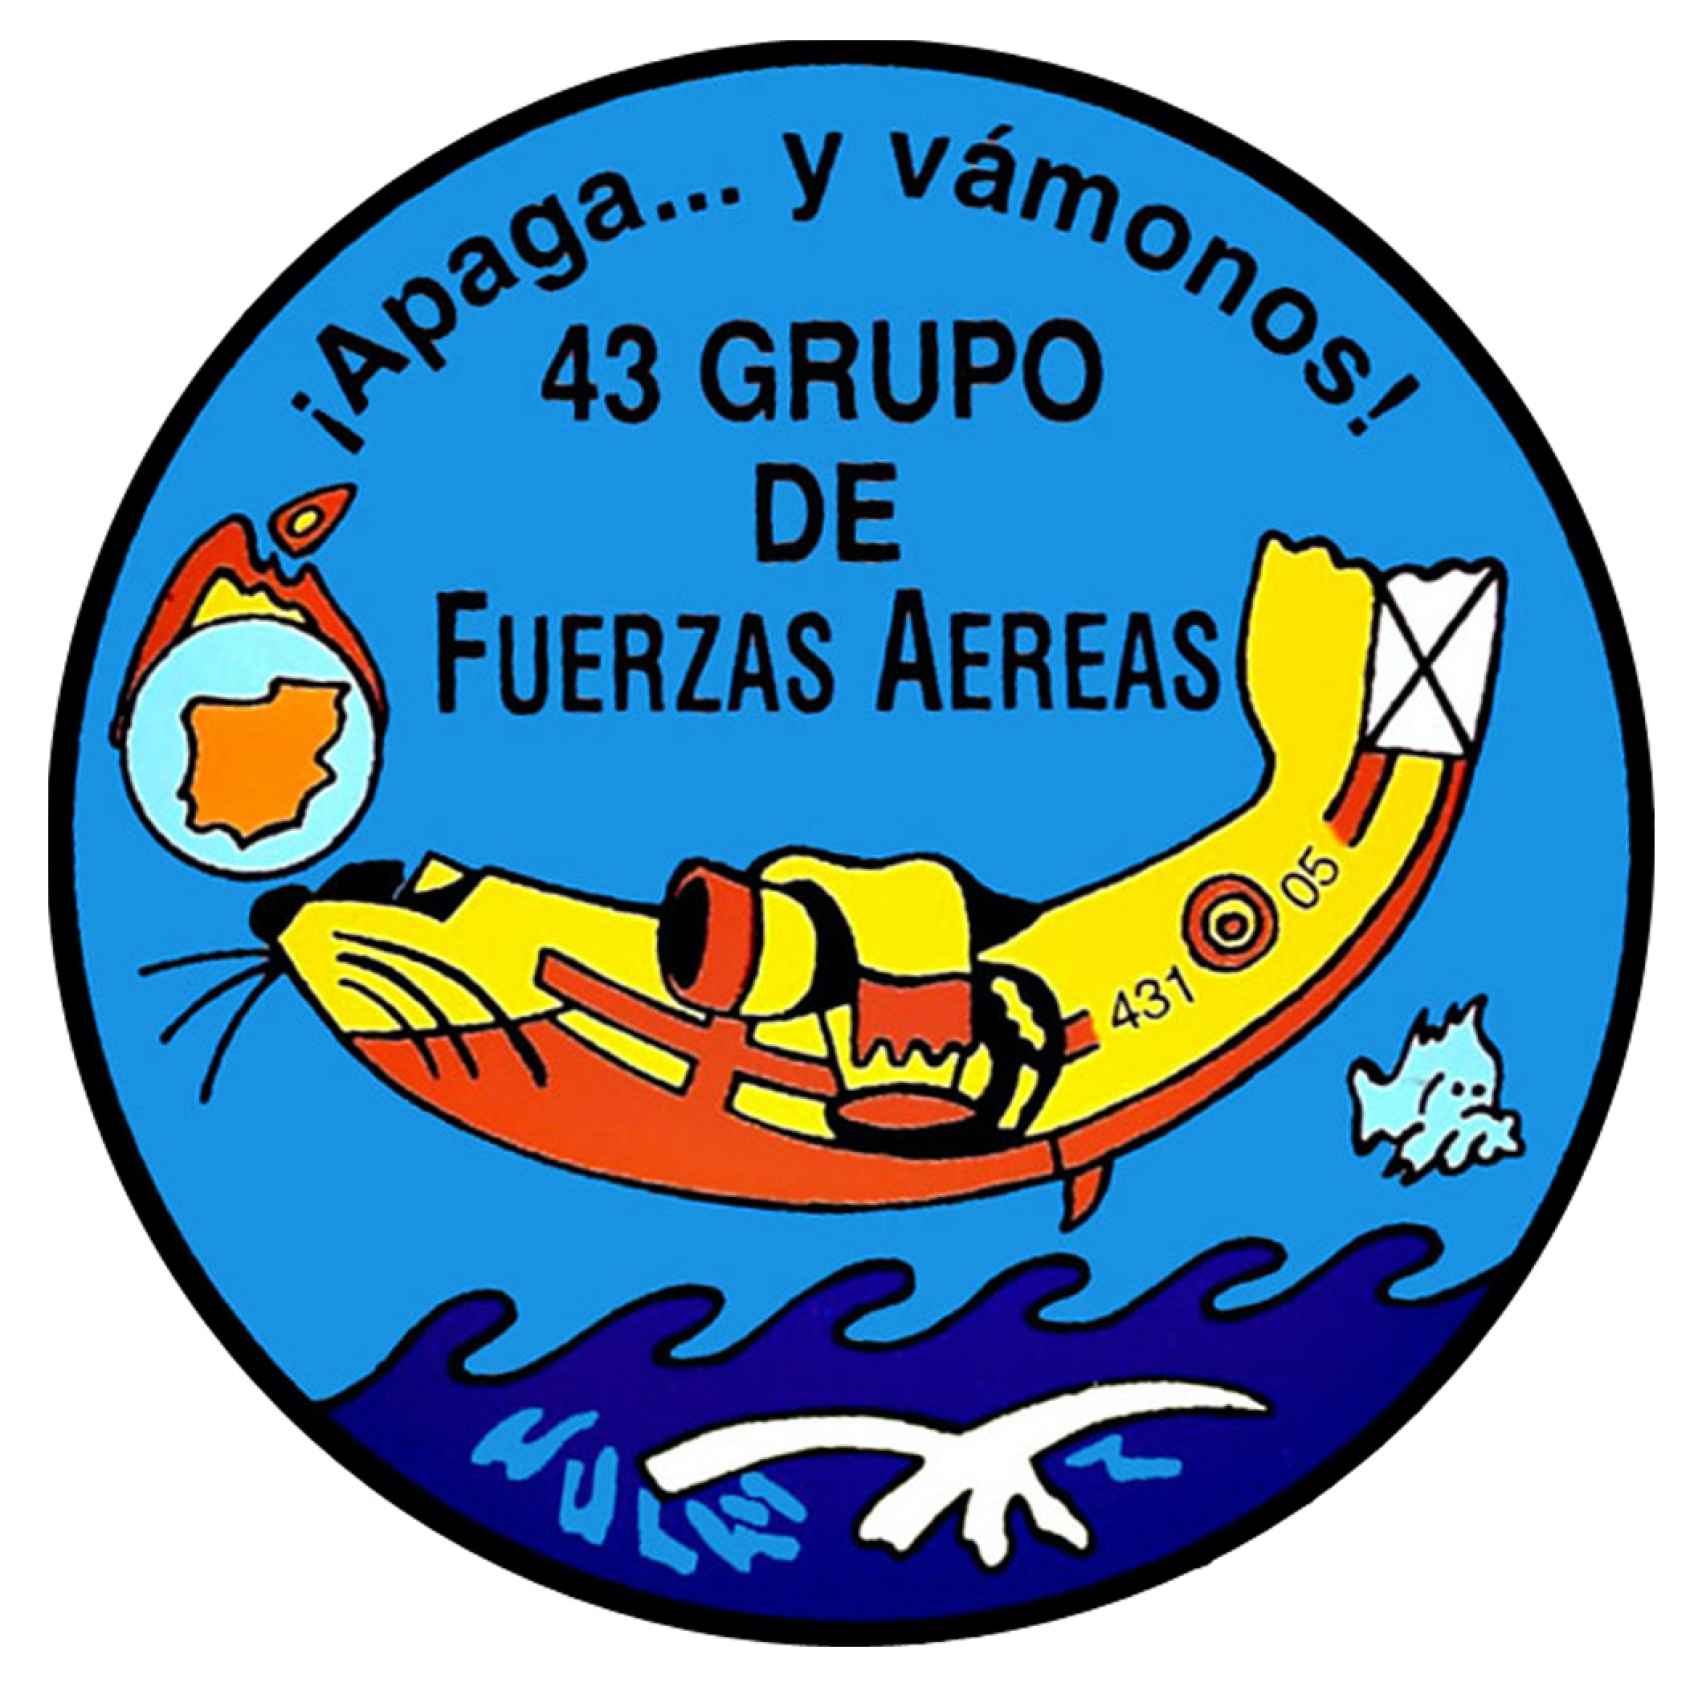 Distintivo del 43 Grupo de Fuerzas Aéreas del Ejército del Aire, donde se lee el lema 'Apaga... y Vámonos'